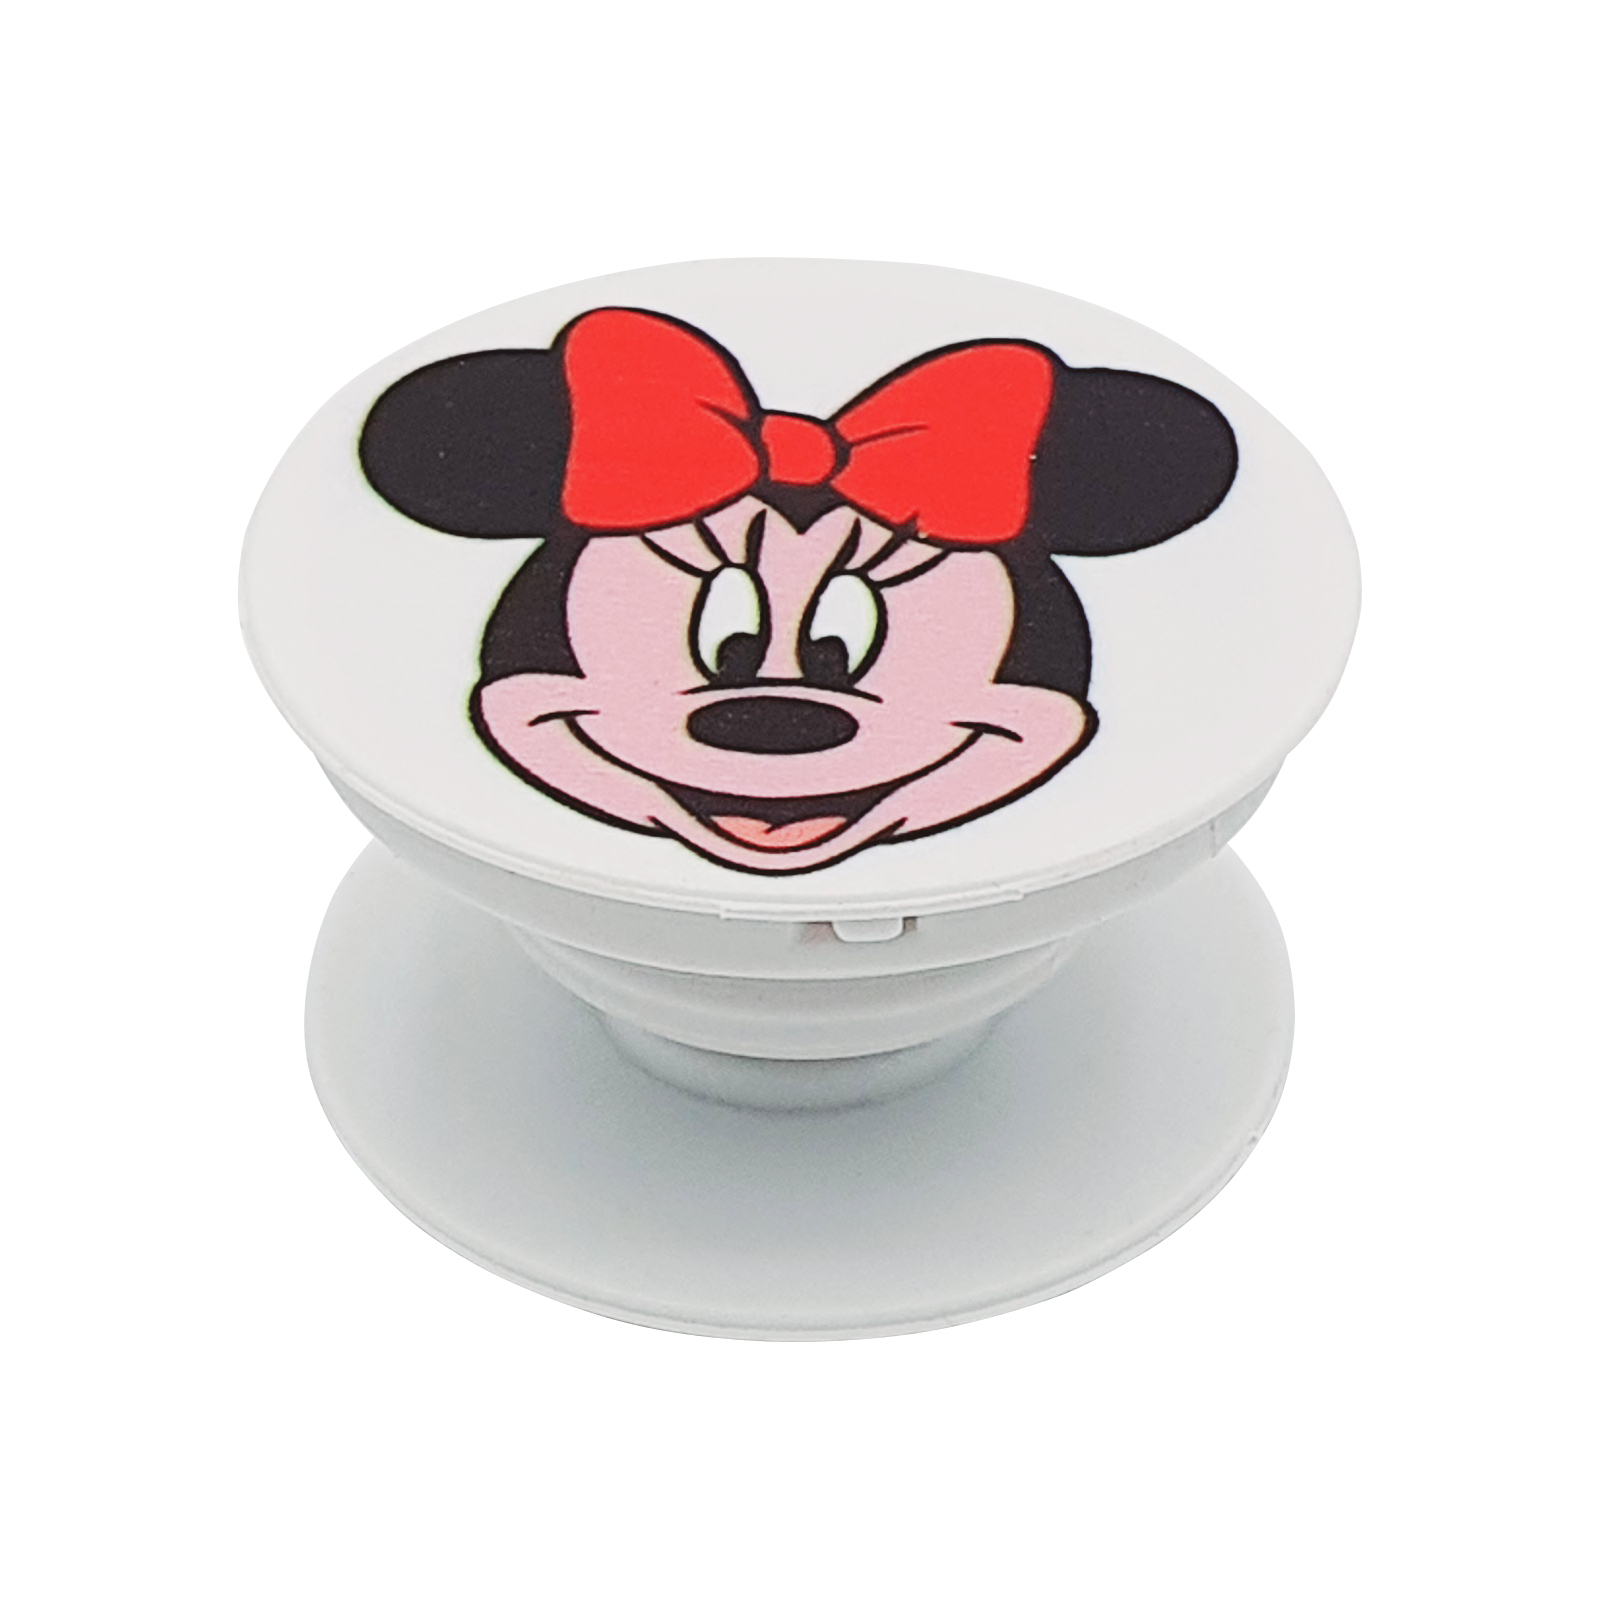 نقد و بررسی پایه نگهدارنده گوشی موبایل پاپ سوکت مدل Minnie Mouse-1 توسط خریداران